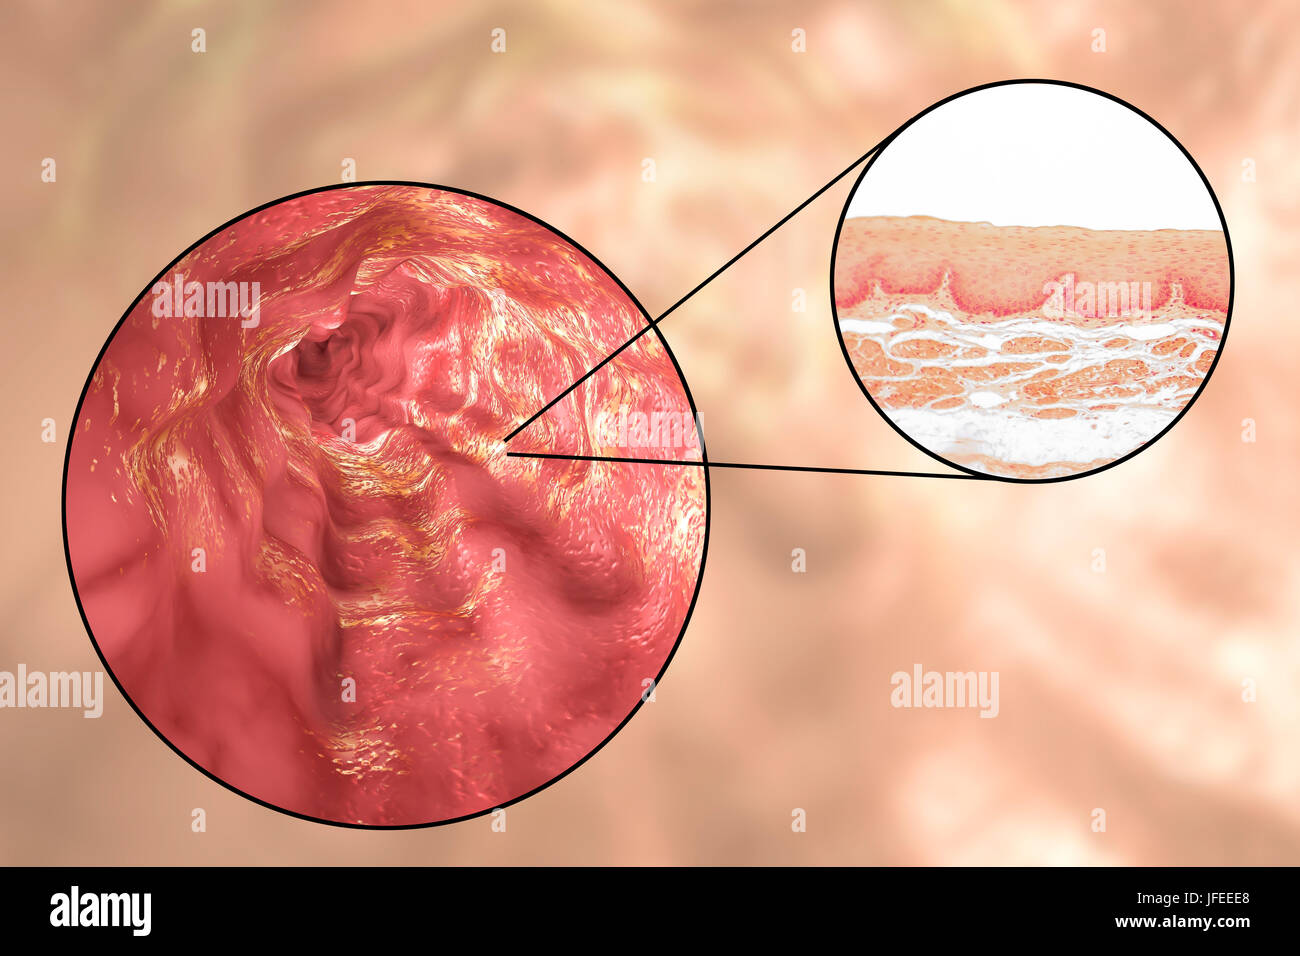 La paroi de l'œsophage. Microphotographie lumière d'une section à travers l'œsophage humain, qui passe les aliments de la bouche à l'estomac. L'oesophage lumen (blanc, haut) est bordée par une couche épaisse d'épithélium pavimenteux stratifié (rouge) qui protège les tissus sous-jacents. En dessous c'est une couche de support de tissu conjonctif, la lamina propria, qui contient des vaisseaux sanguins et est riche en fibres d'élastine. Banque D'Images